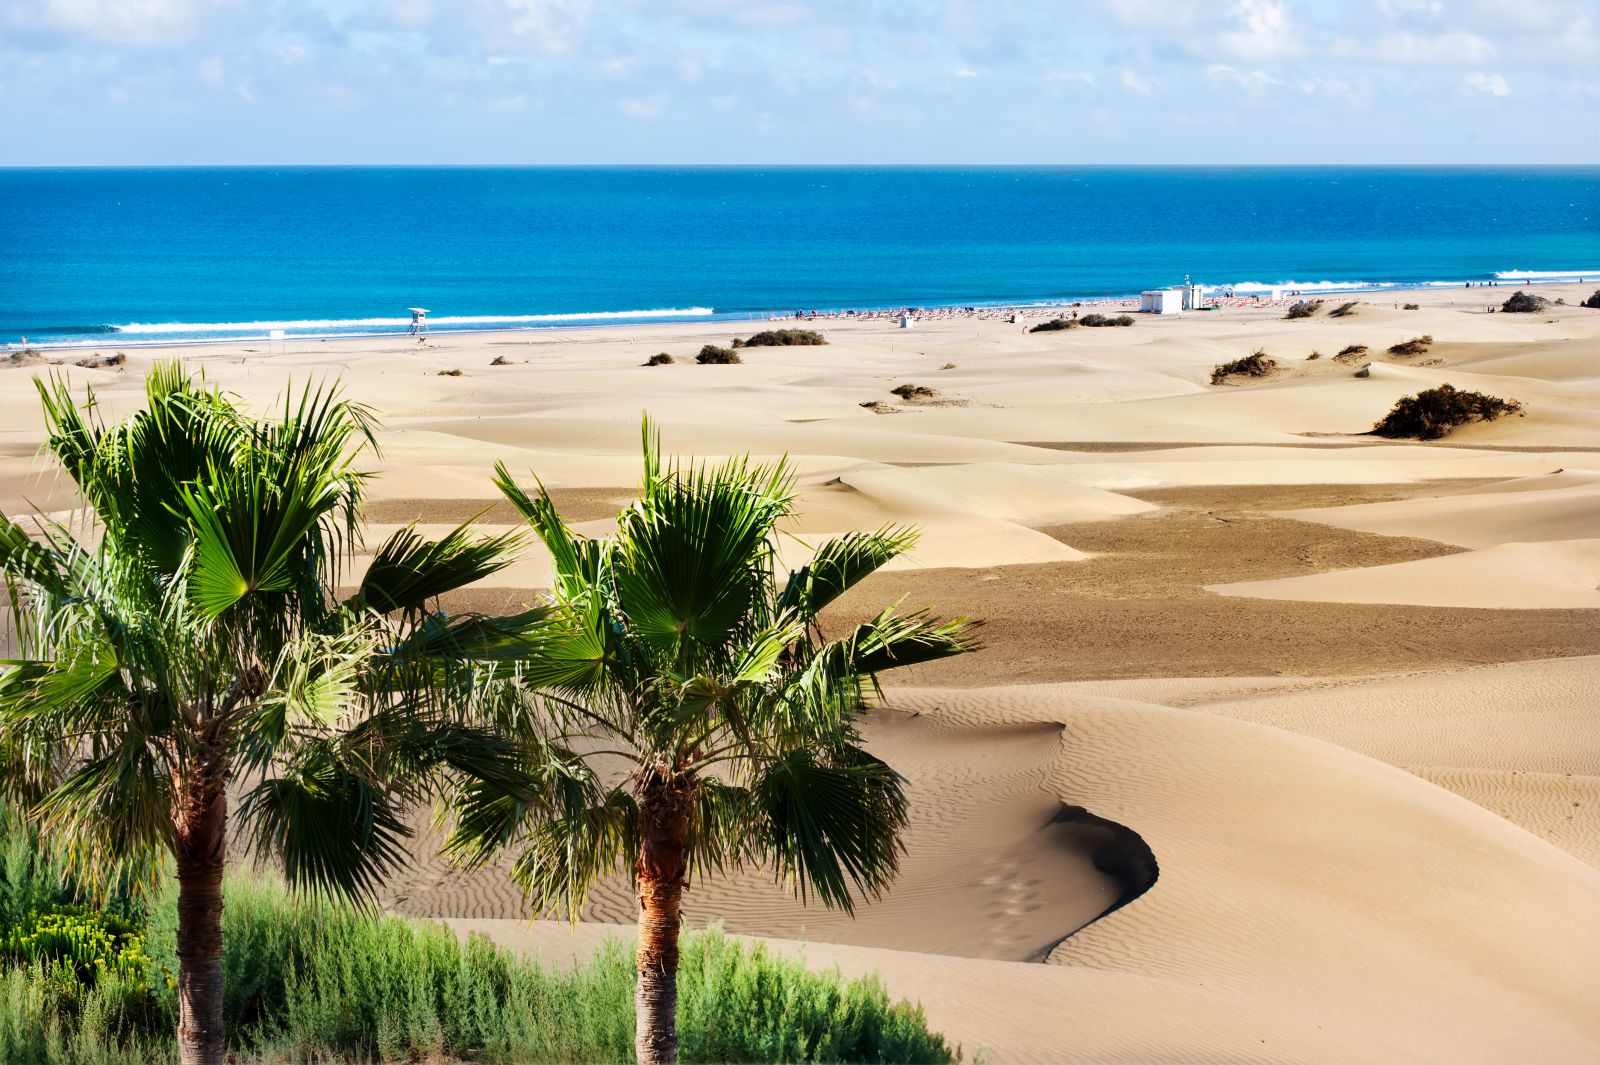 Nicht bloß Strand, sondern Dünenlandschaften, wie hier die Sanddünen von Maspalomas auf Gran Canaria. ©Valery Bareta